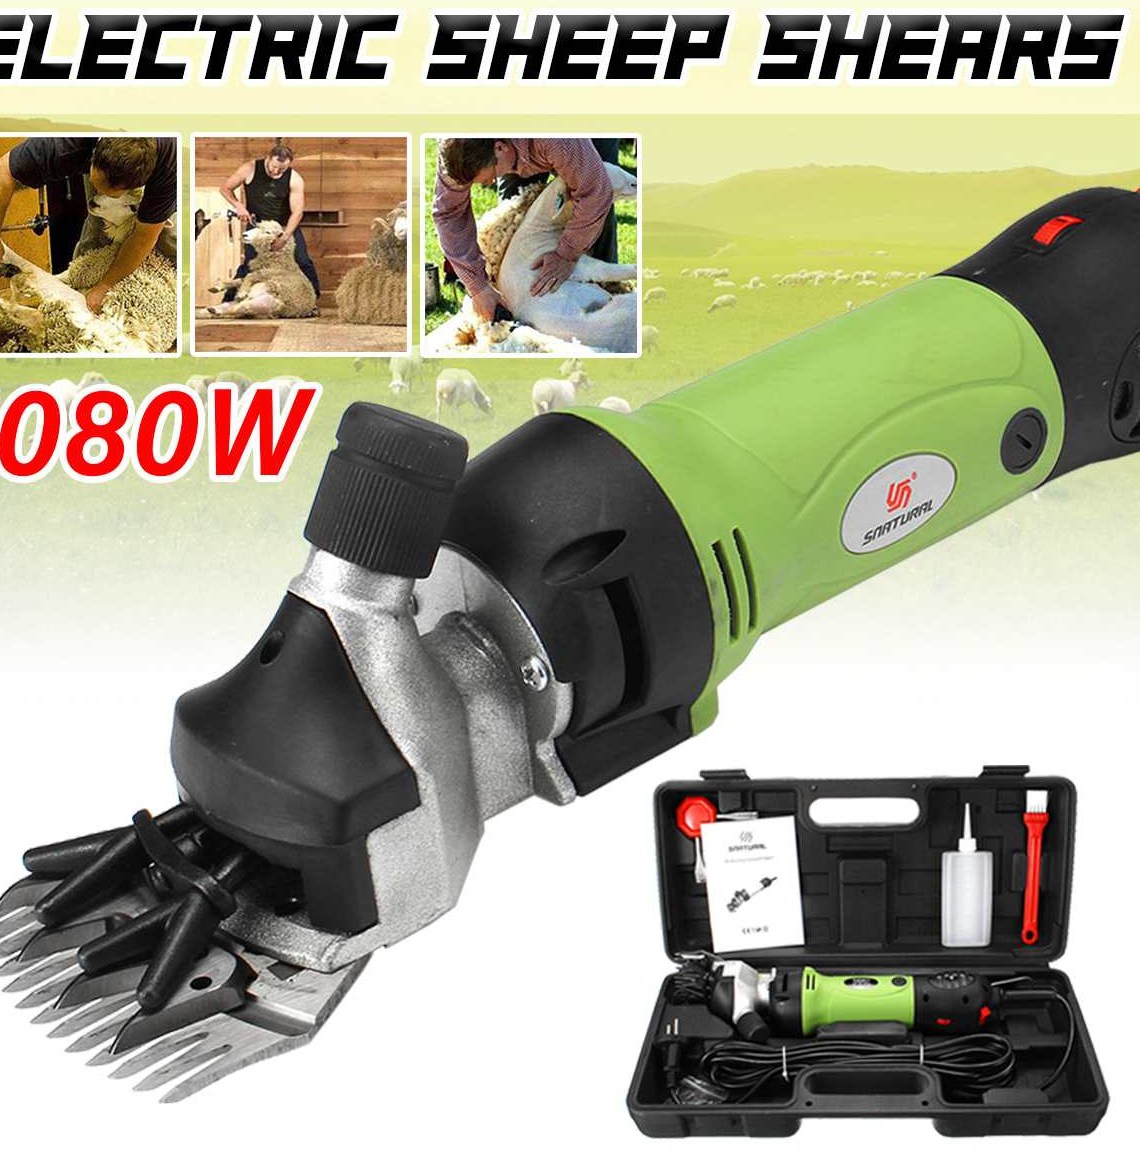 1080W 220V Electric Shearing Clipper Shear Sheep Goats Alpaca Shears Pet font b Hair b font